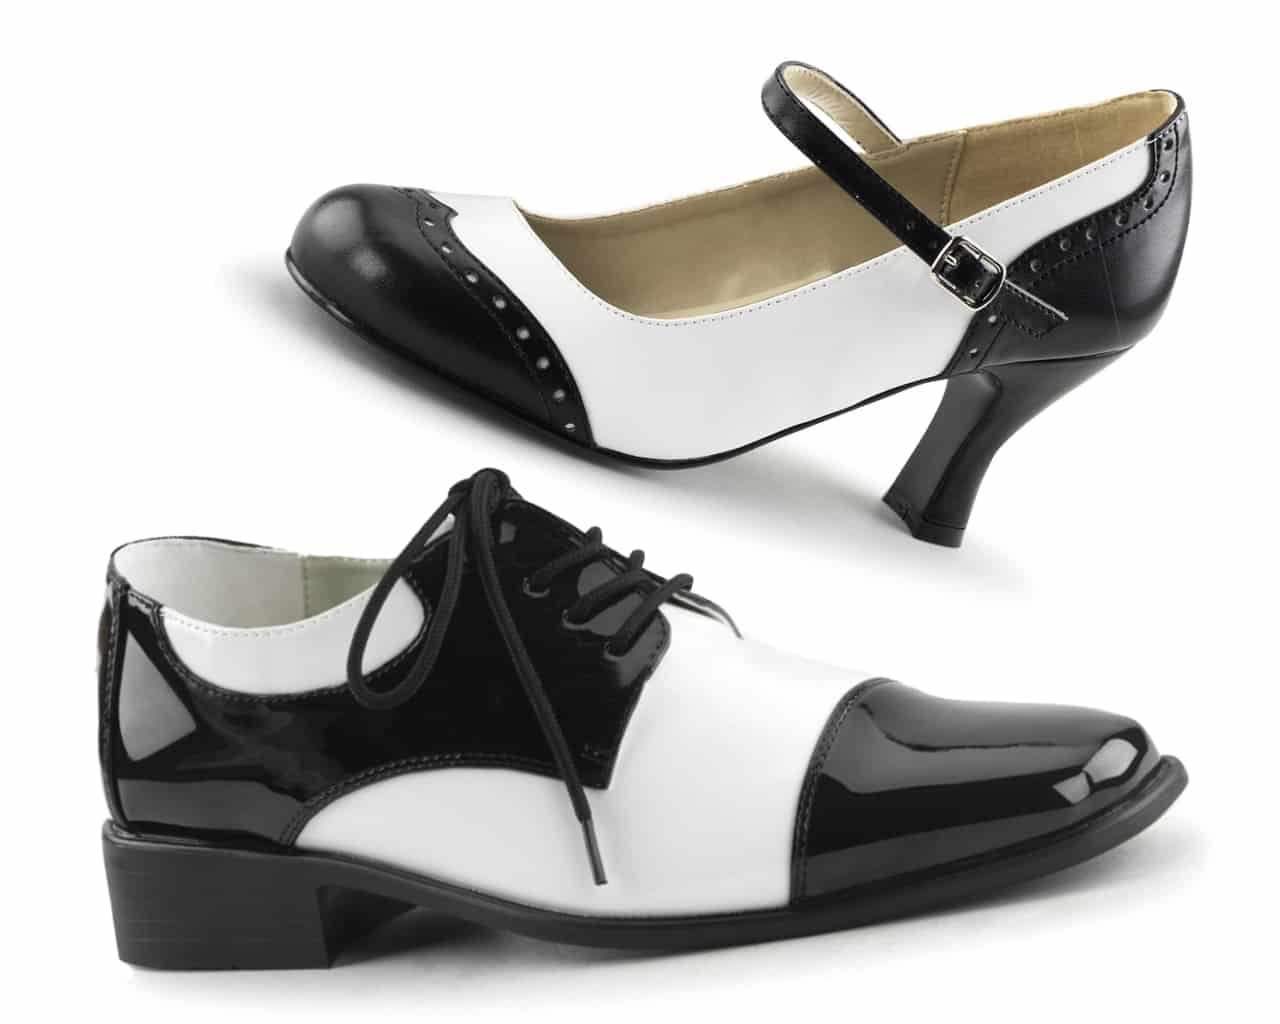 Mafia shoes